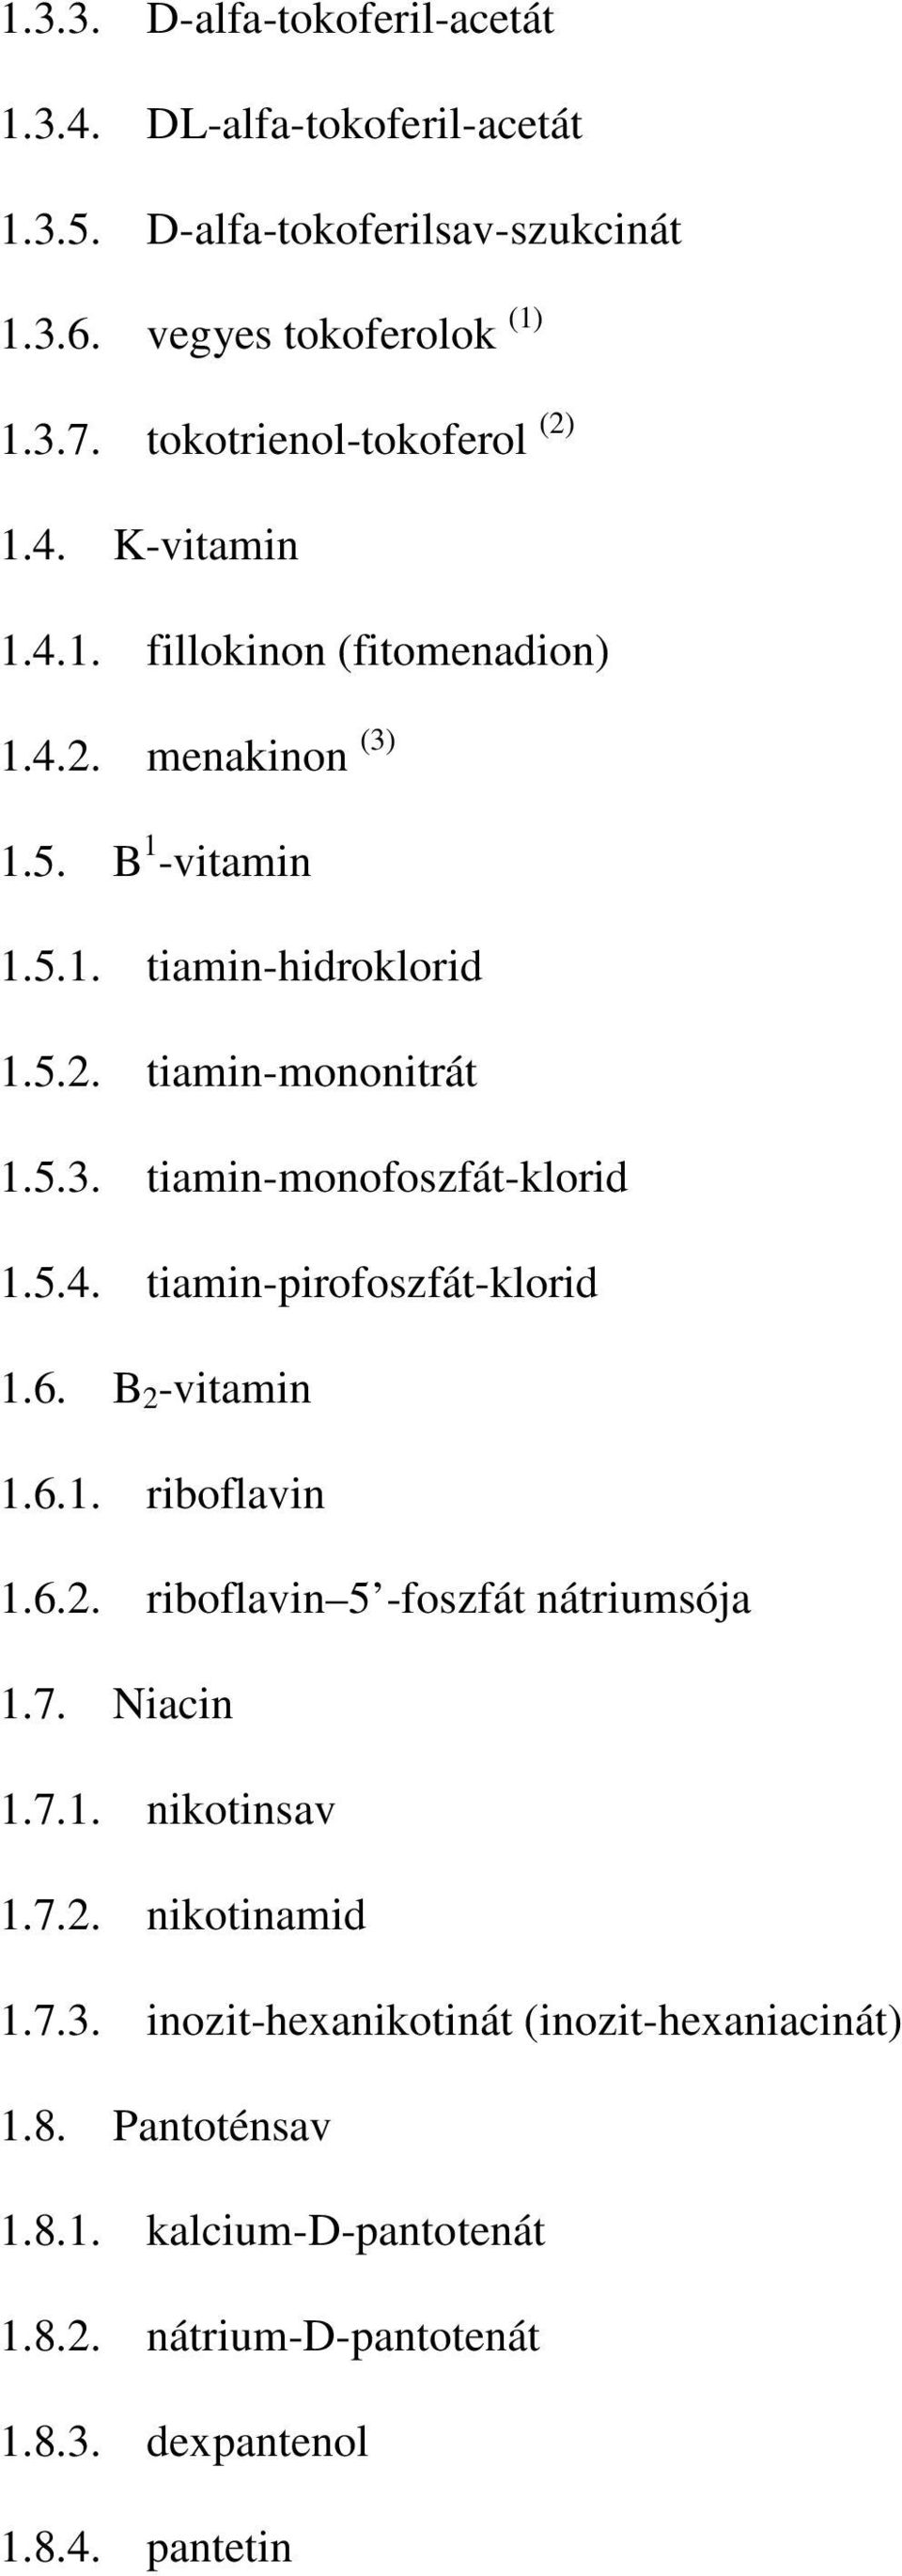 5.3. tiamin-monofoszfát-klorid 1.5.4. tiamin-pirofoszfát-klorid 1.6. B 2 -vitamin 1.6.1. riboflavin 1.6.2. riboflavin 5 -foszfát nátriumsója 1.7. Niacin 1.7.1. nikotinsav 1.